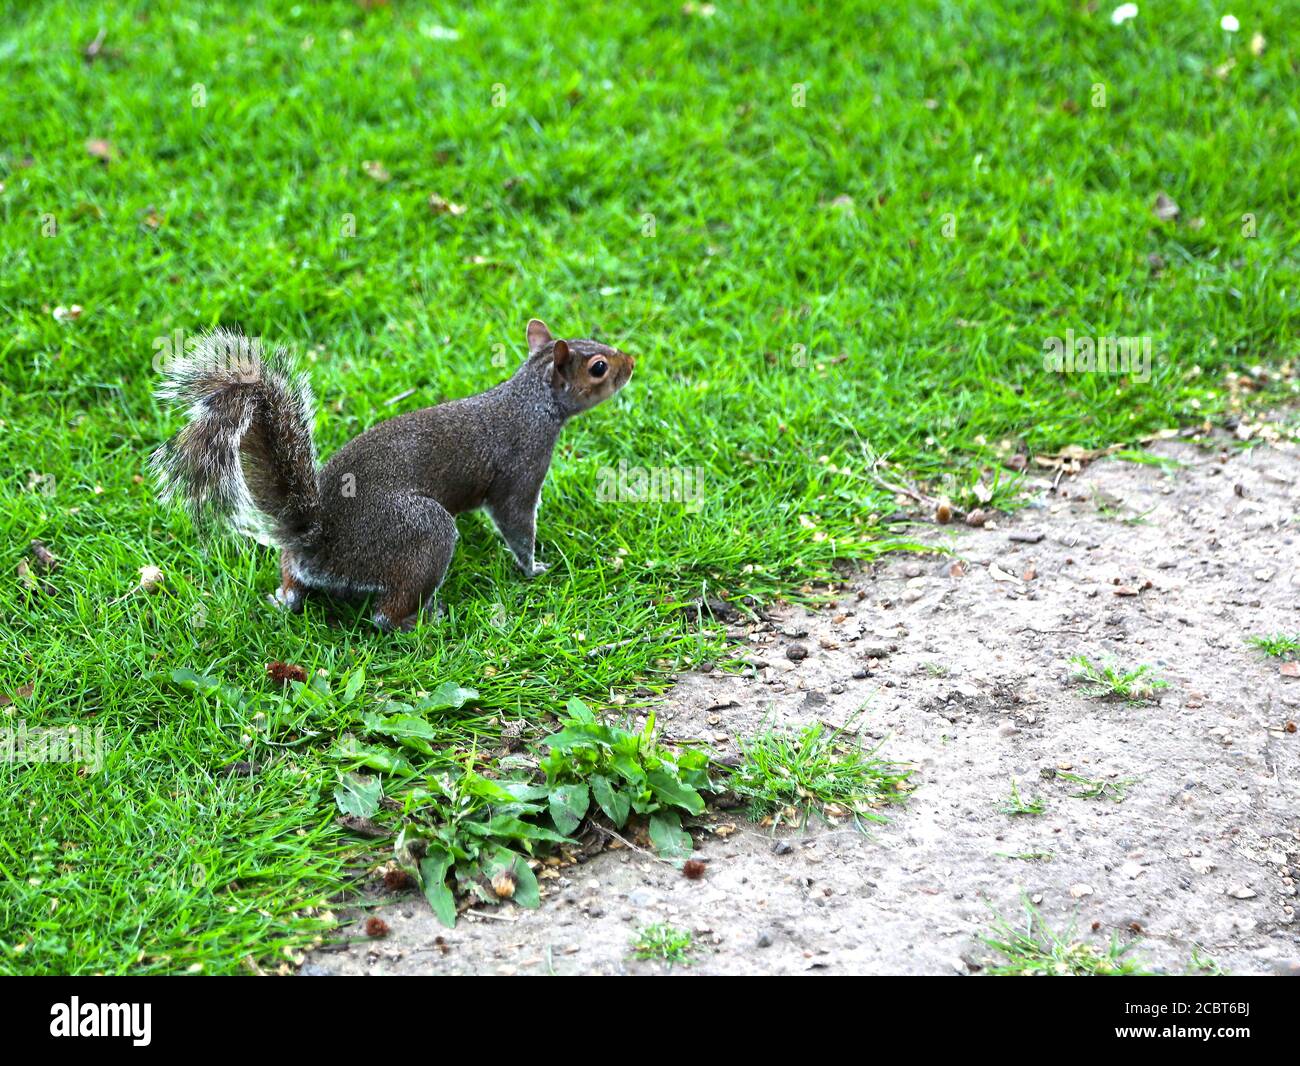 Écureuil de renard, sciurus niger, brun-noir foncé avec une queue broussailleuse sautant sur l'herbe verte. Banque D'Images